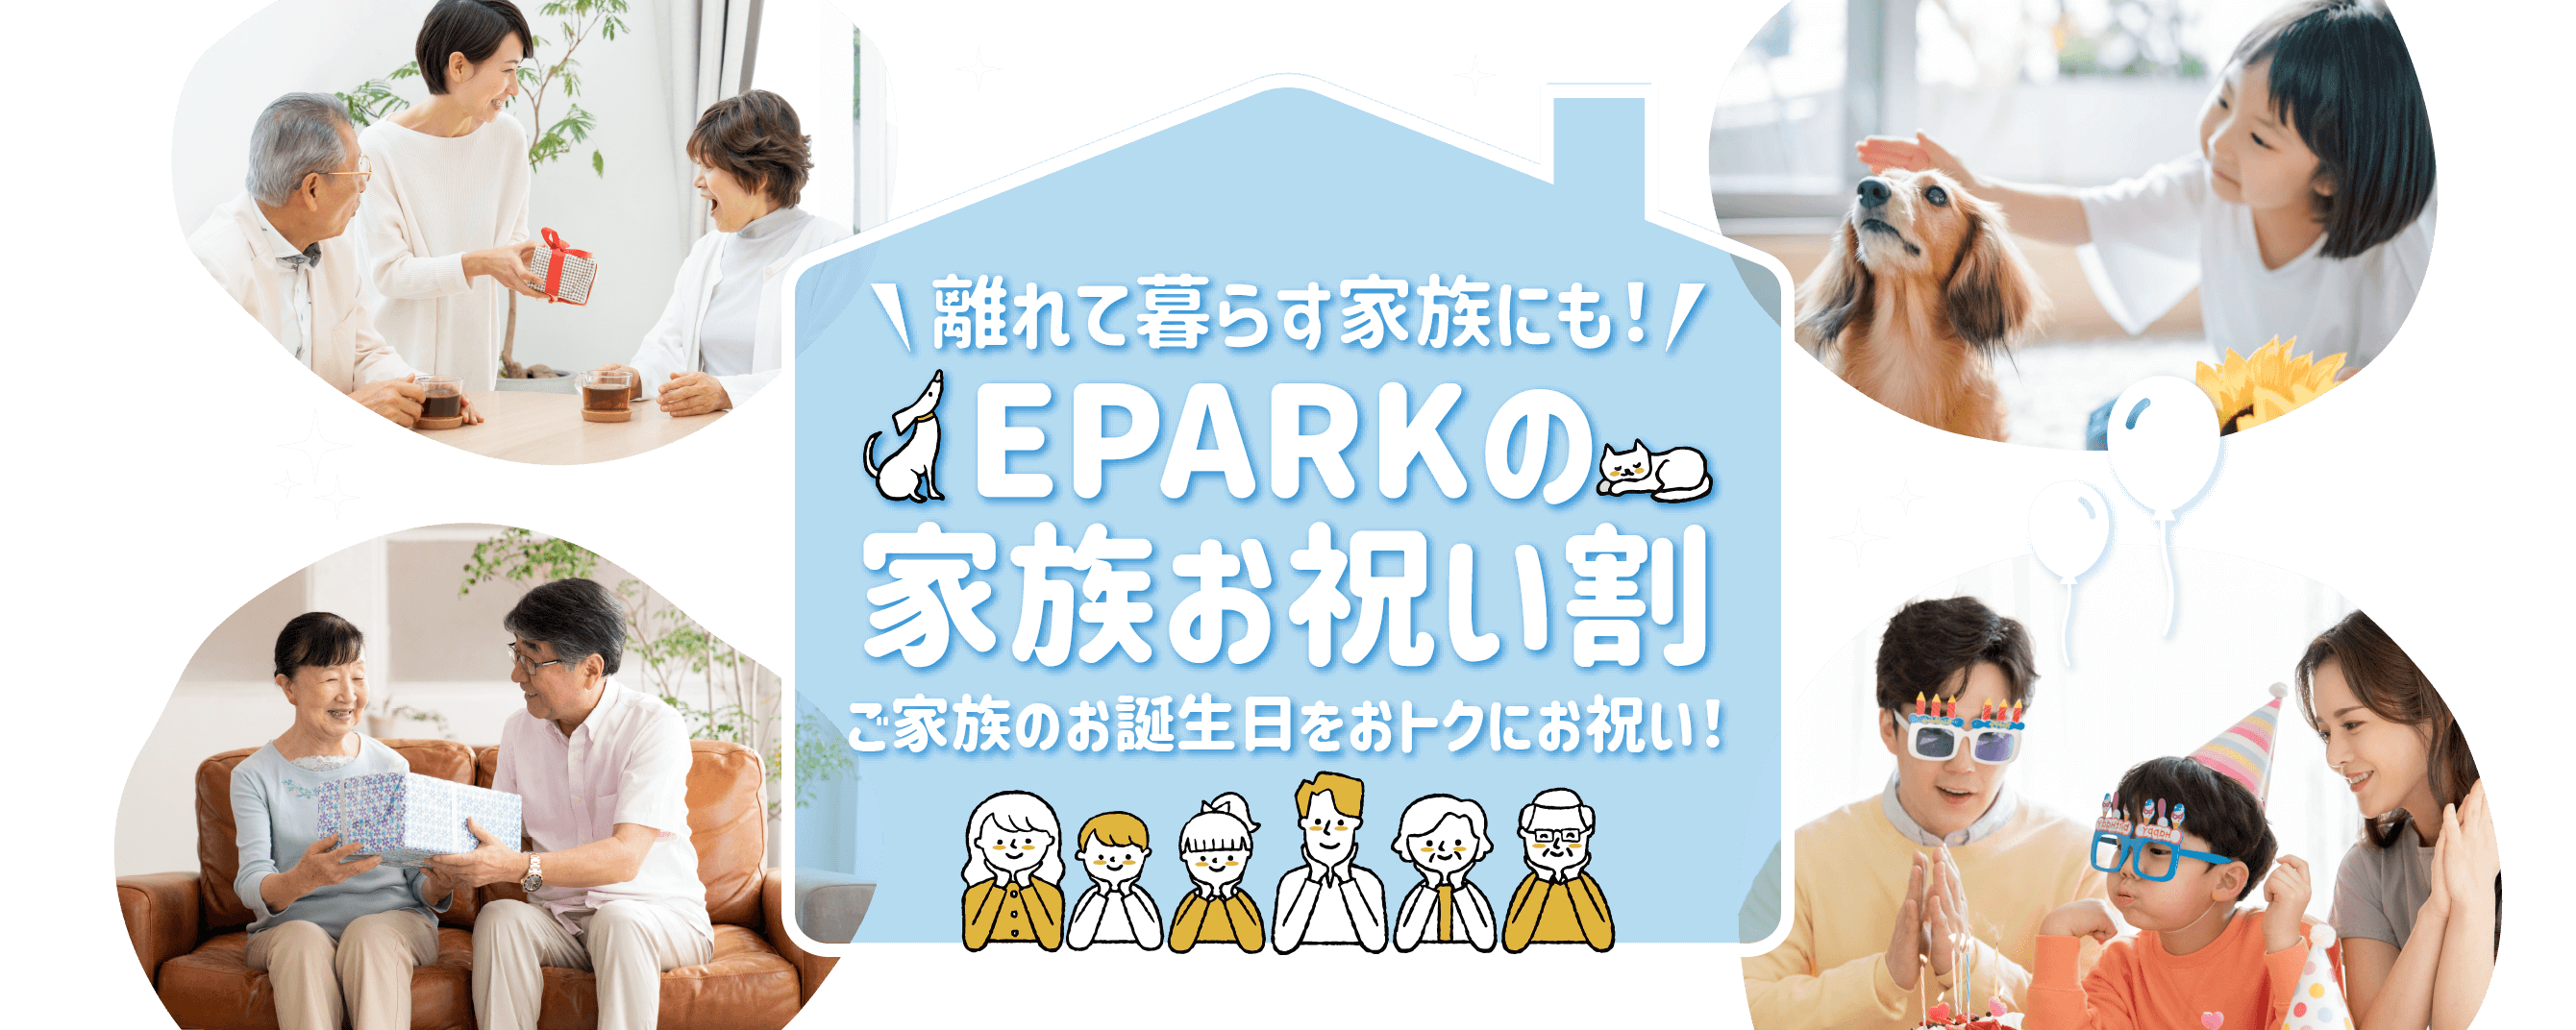 離れて暮らす家族にも！EPARKの家族お祝い割 ご家族のお誕生日をおトクにお祝い！